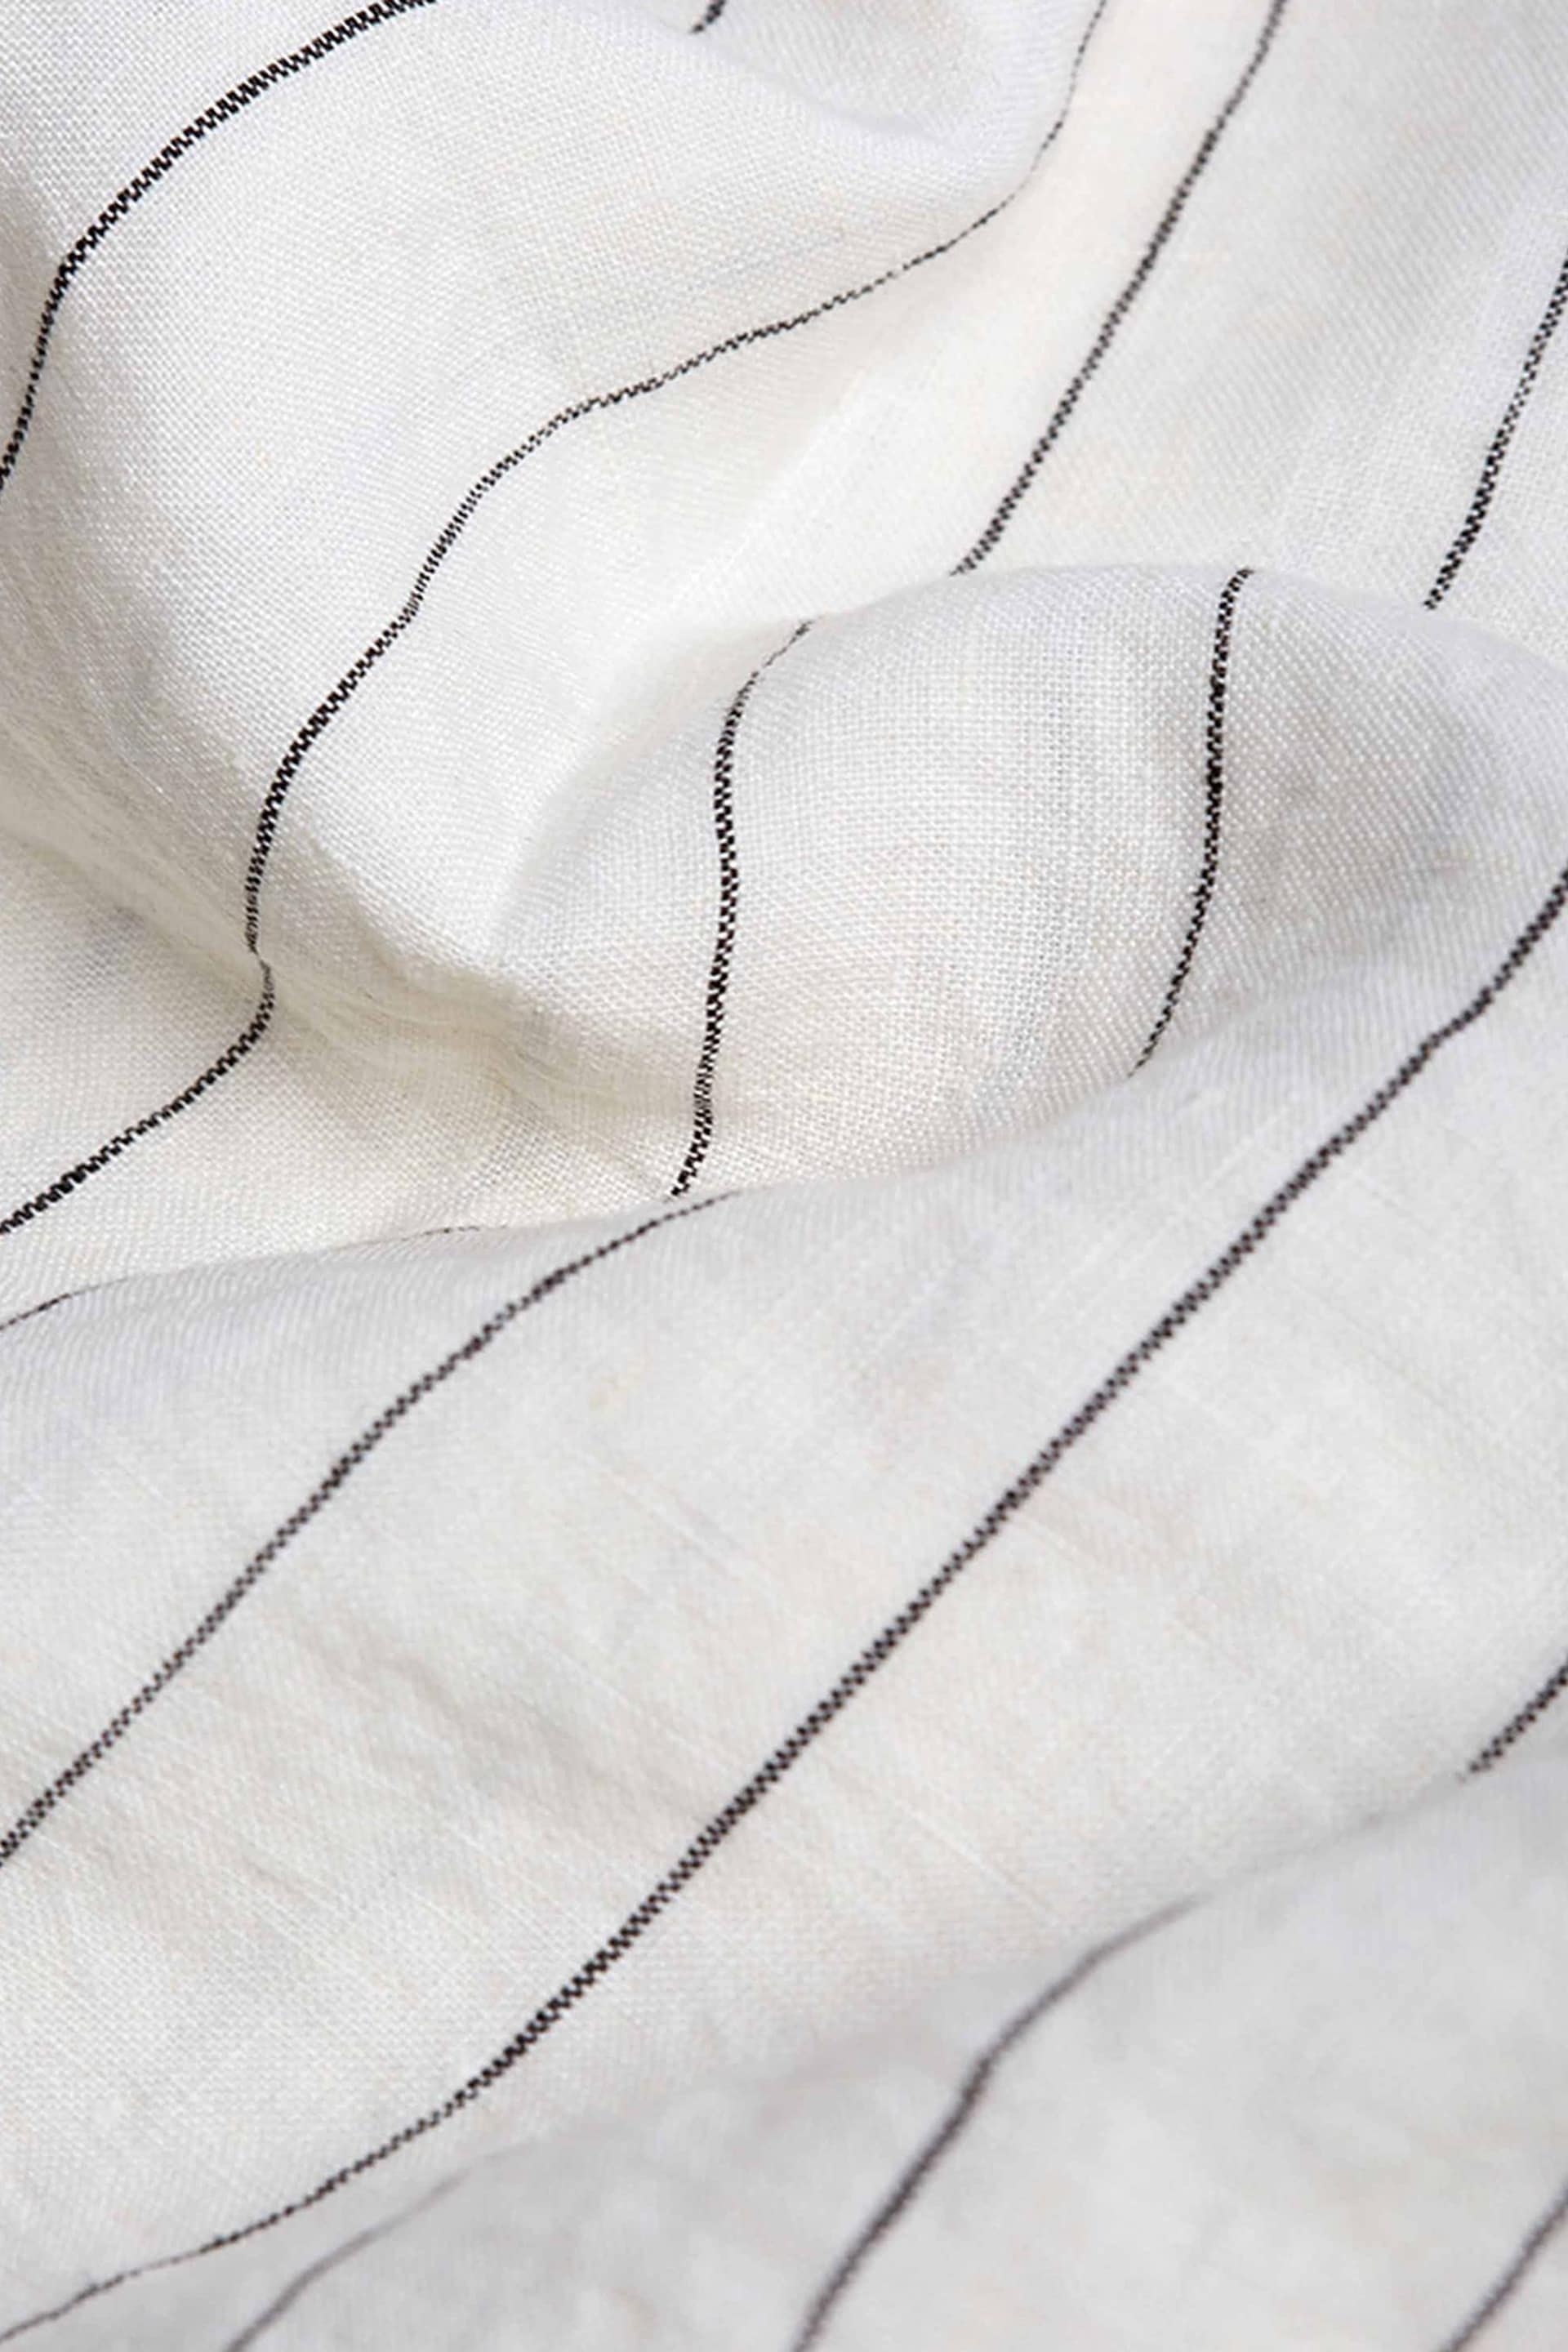 Piglet in Bed Luna Stripe Linen Duvet Cover - Image 2 of 3